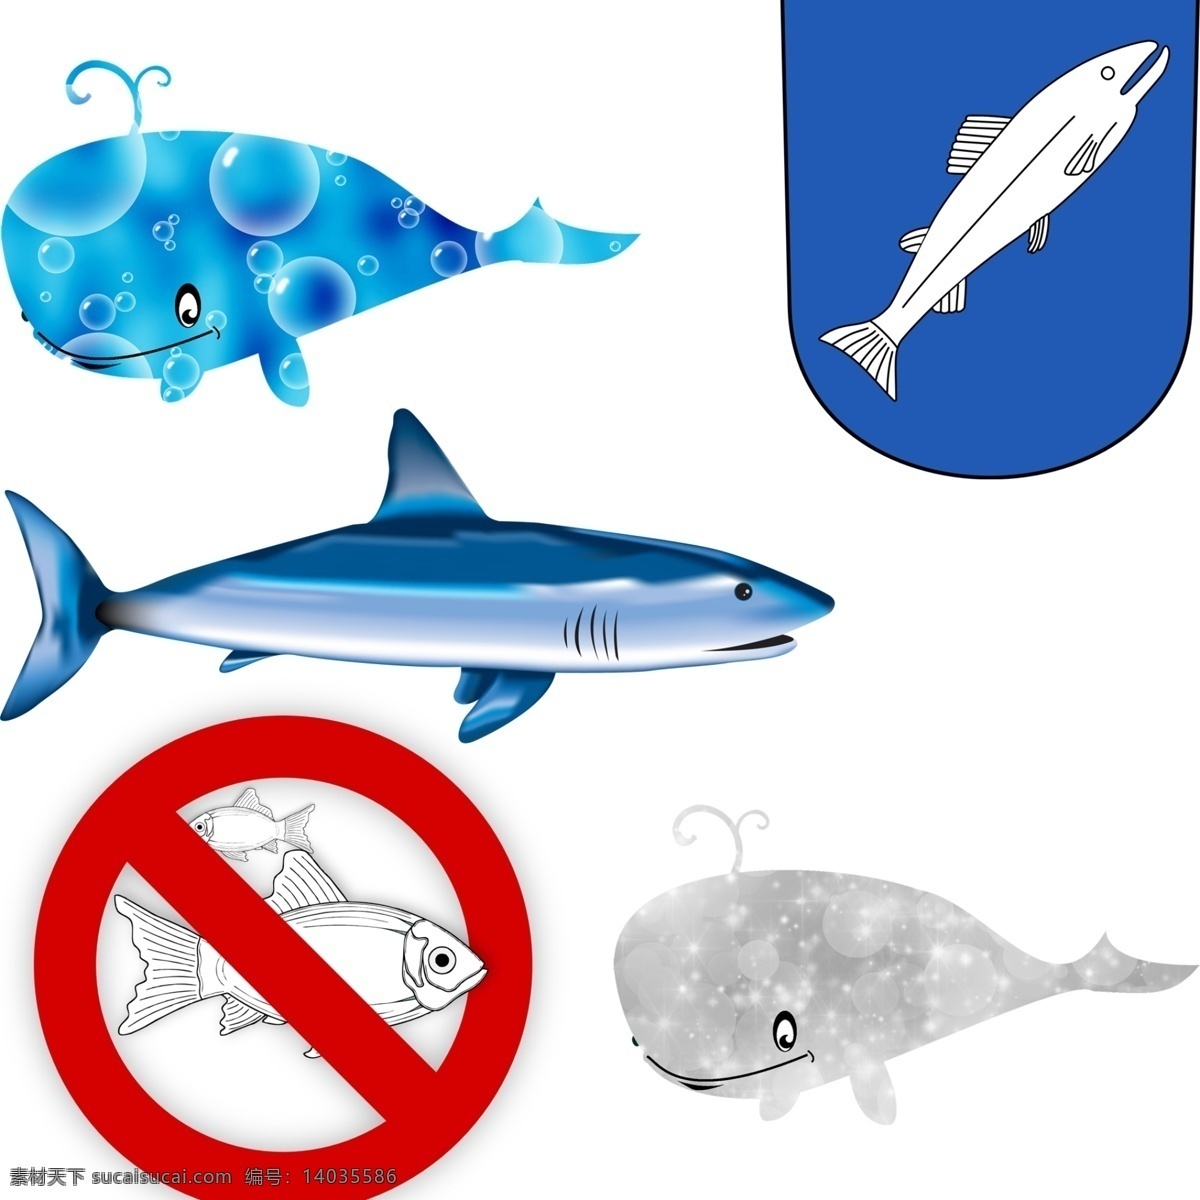 鱼鲨鱼 捕鱼 禁止捕鱼 捕捞 禁止捕捞鱼